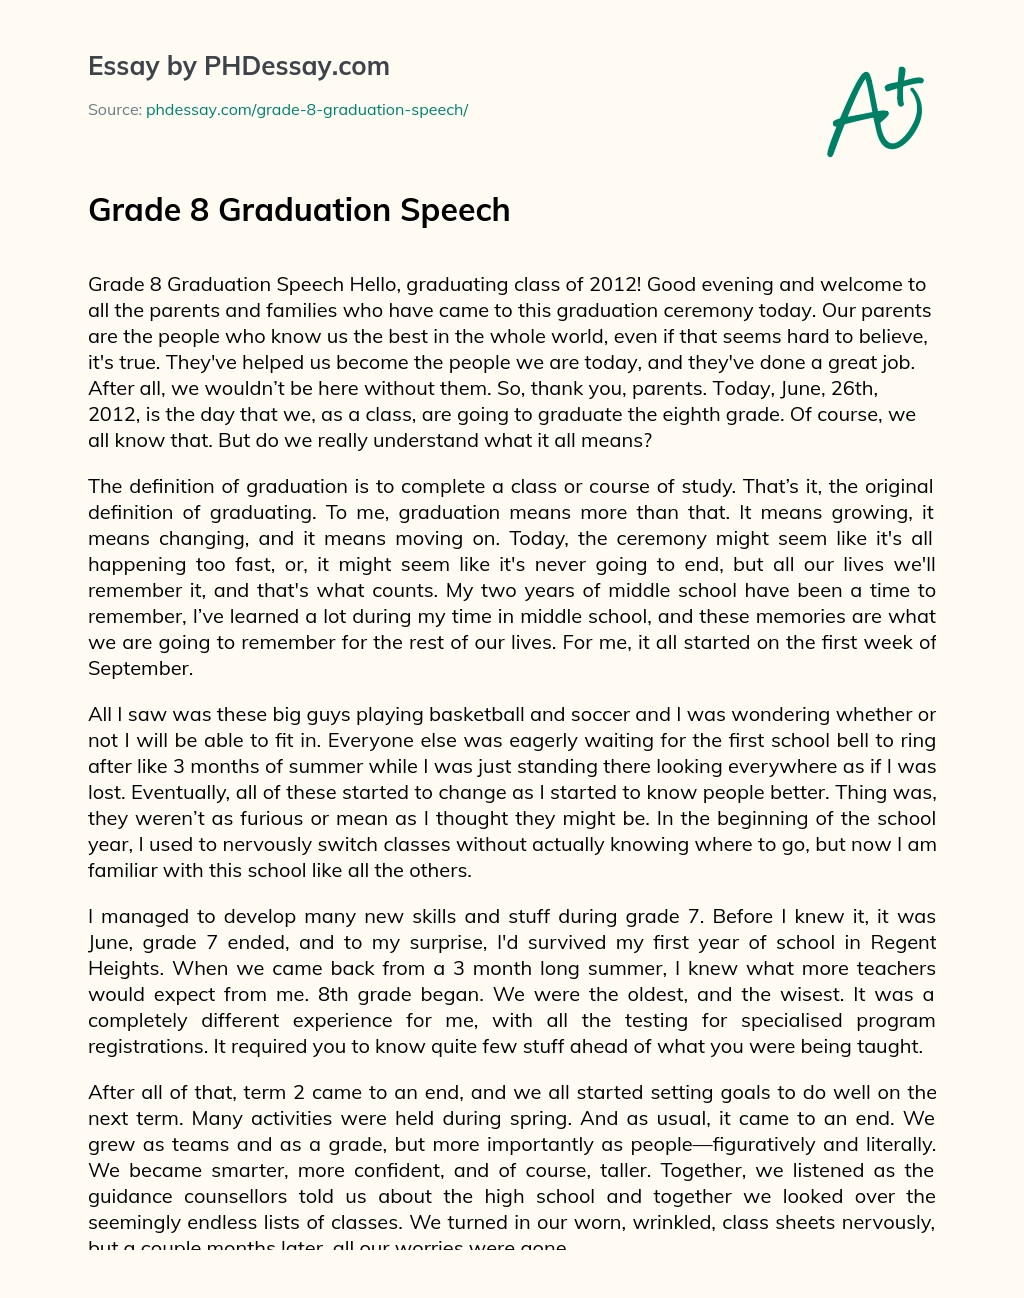 Grade 17 Graduation Speech - PHDessay.com